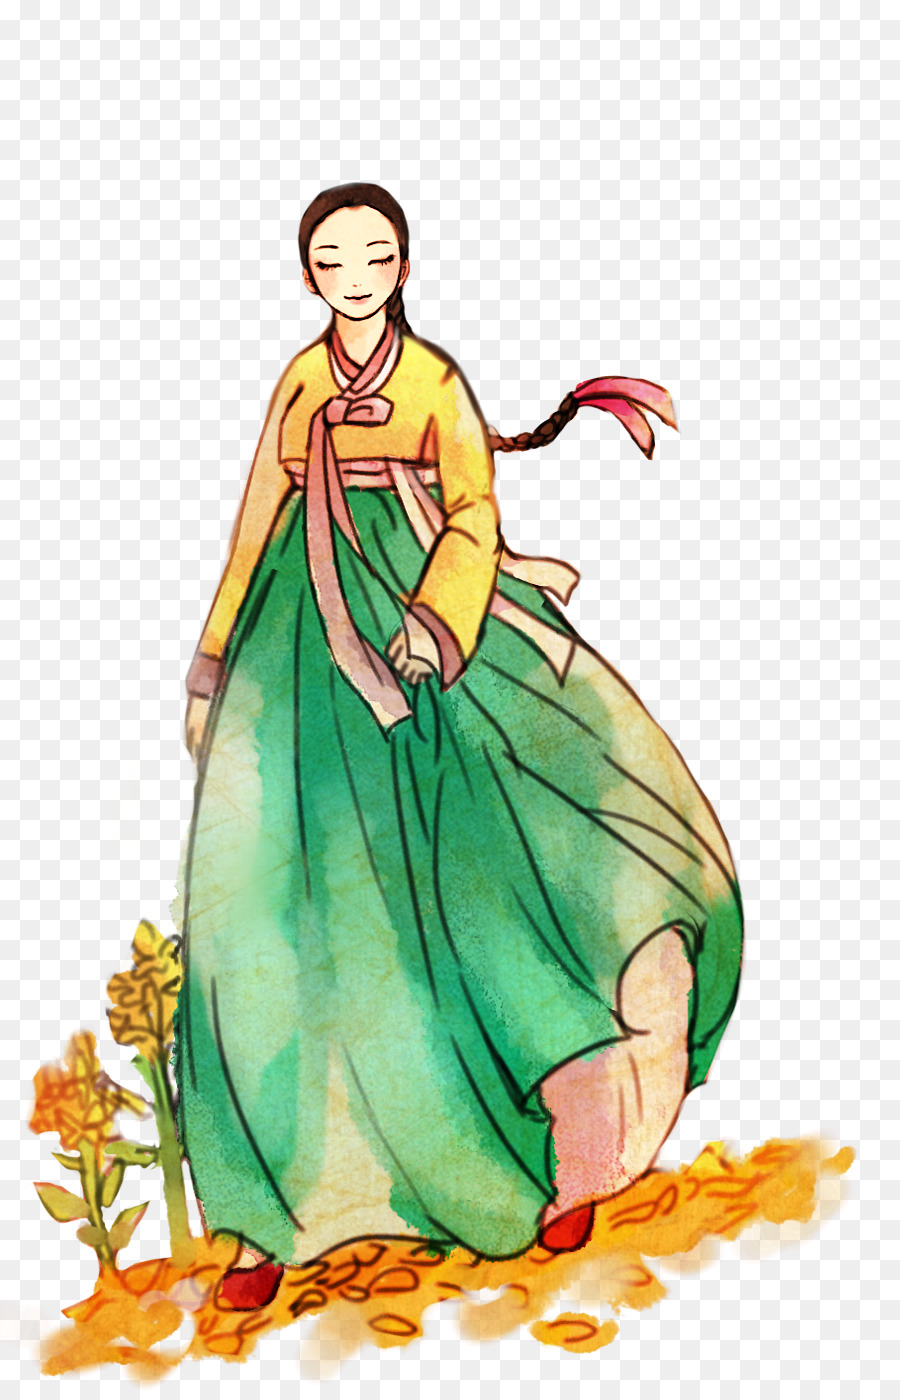 Vẽ quần áo anime ngầu hình vẽ trang phục anime nam nữ  Trang Tin Tức  Tổng Hợp Tây Hồ  Link Tài Liệu Giáo Dục